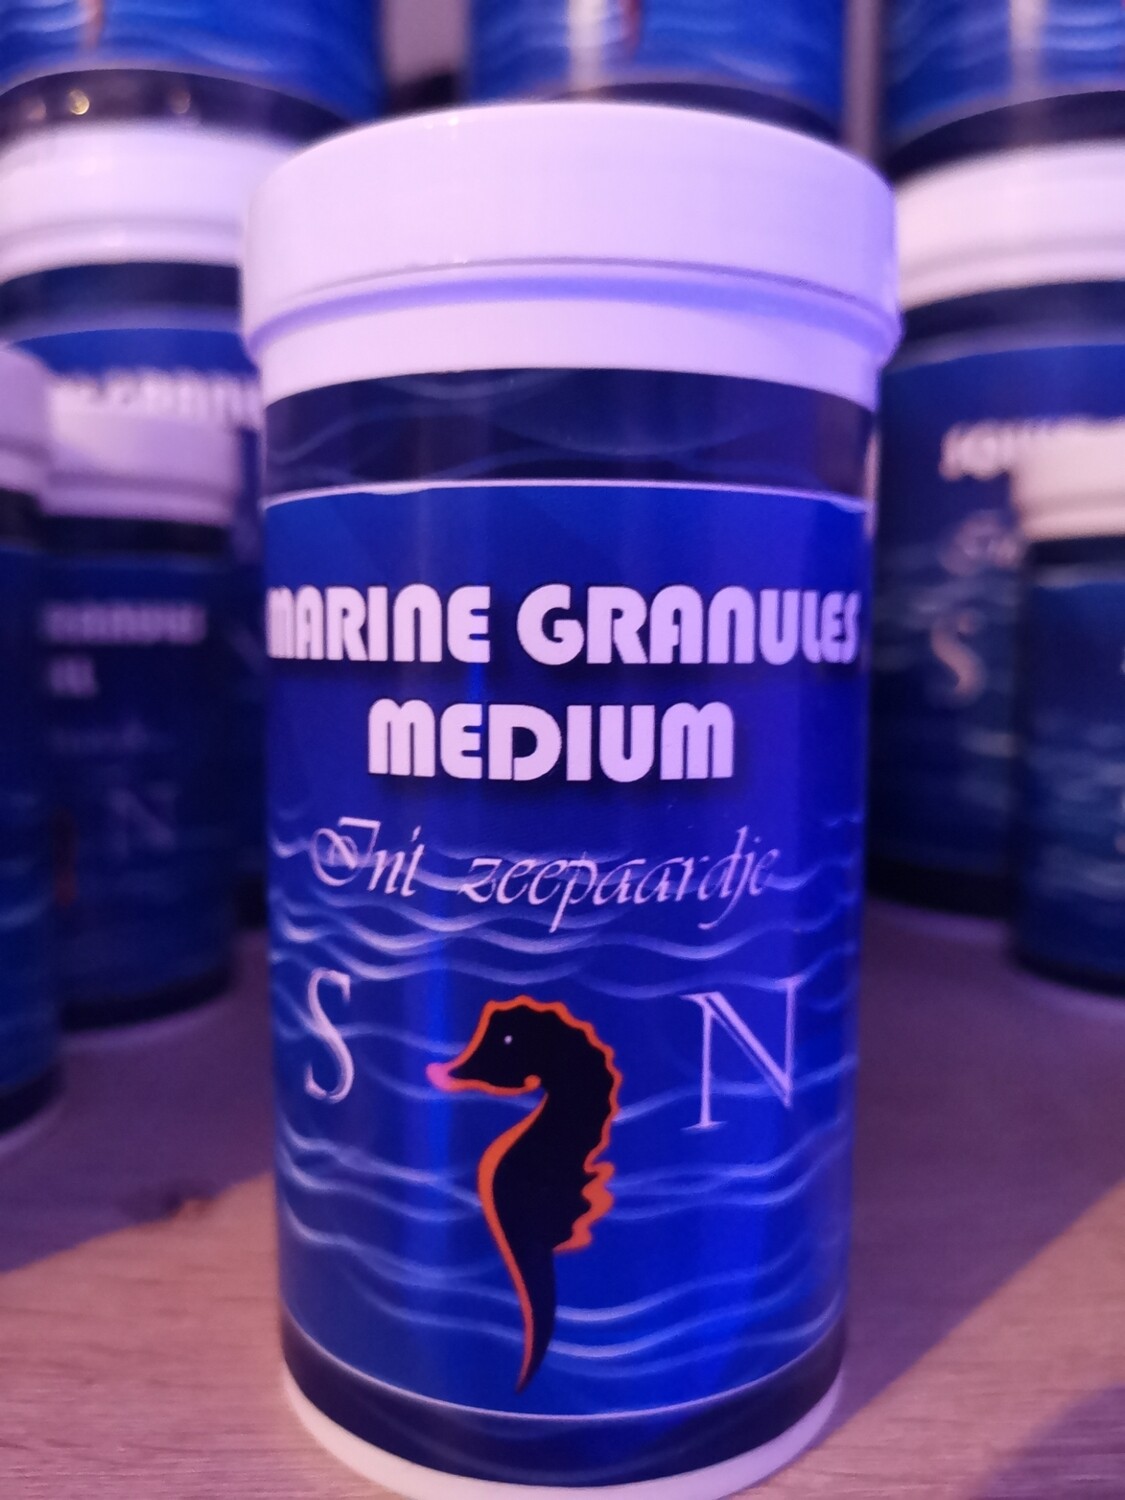 Marine granules medium